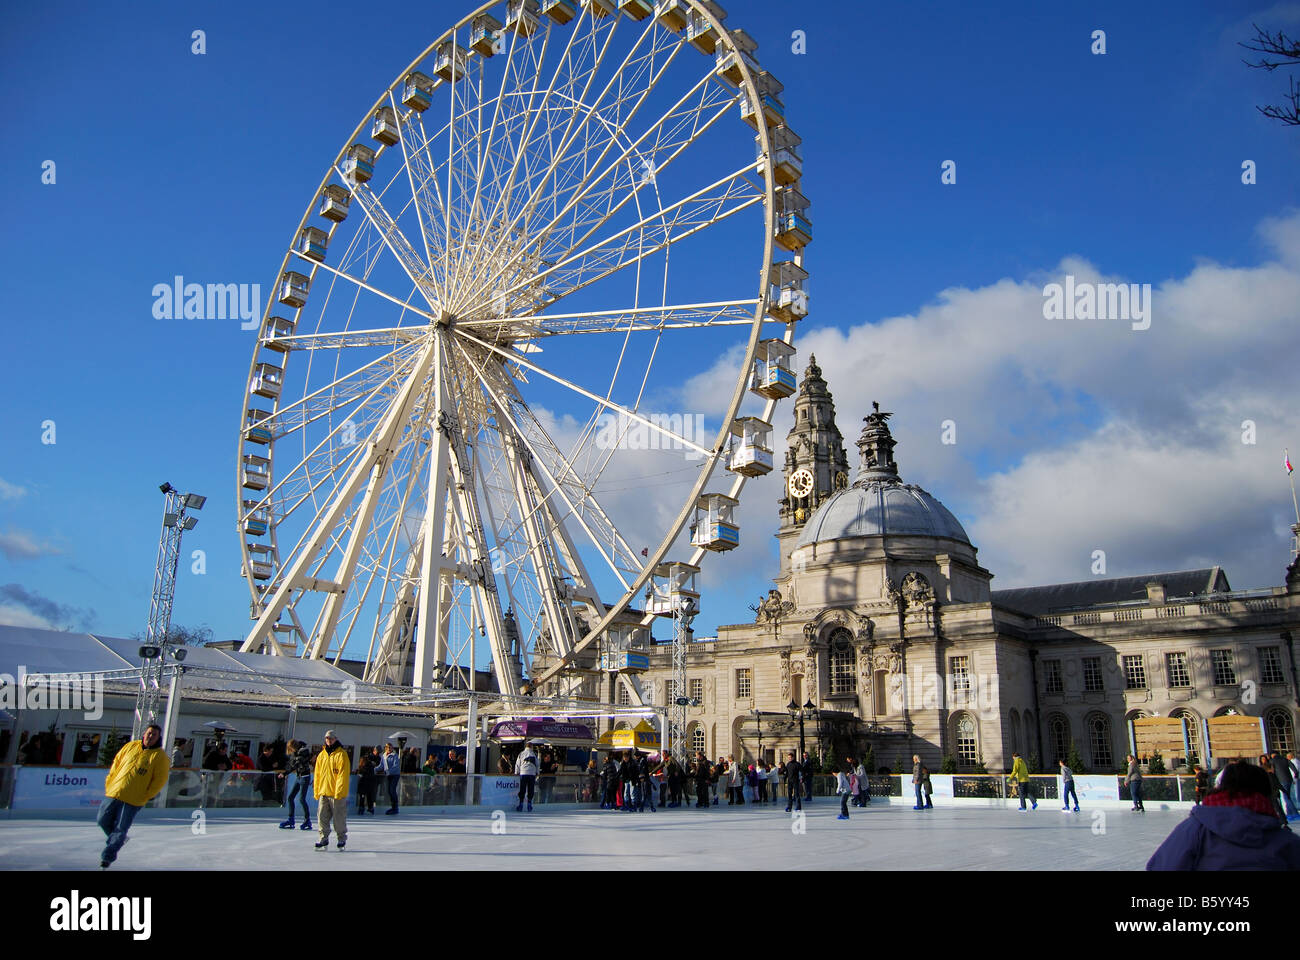 Winter Wonderland Ice Skating Rink mit Riesenrad, Rathaus Gärten, Cardiff, Wales, Vereinigtes Königreich Stockfoto